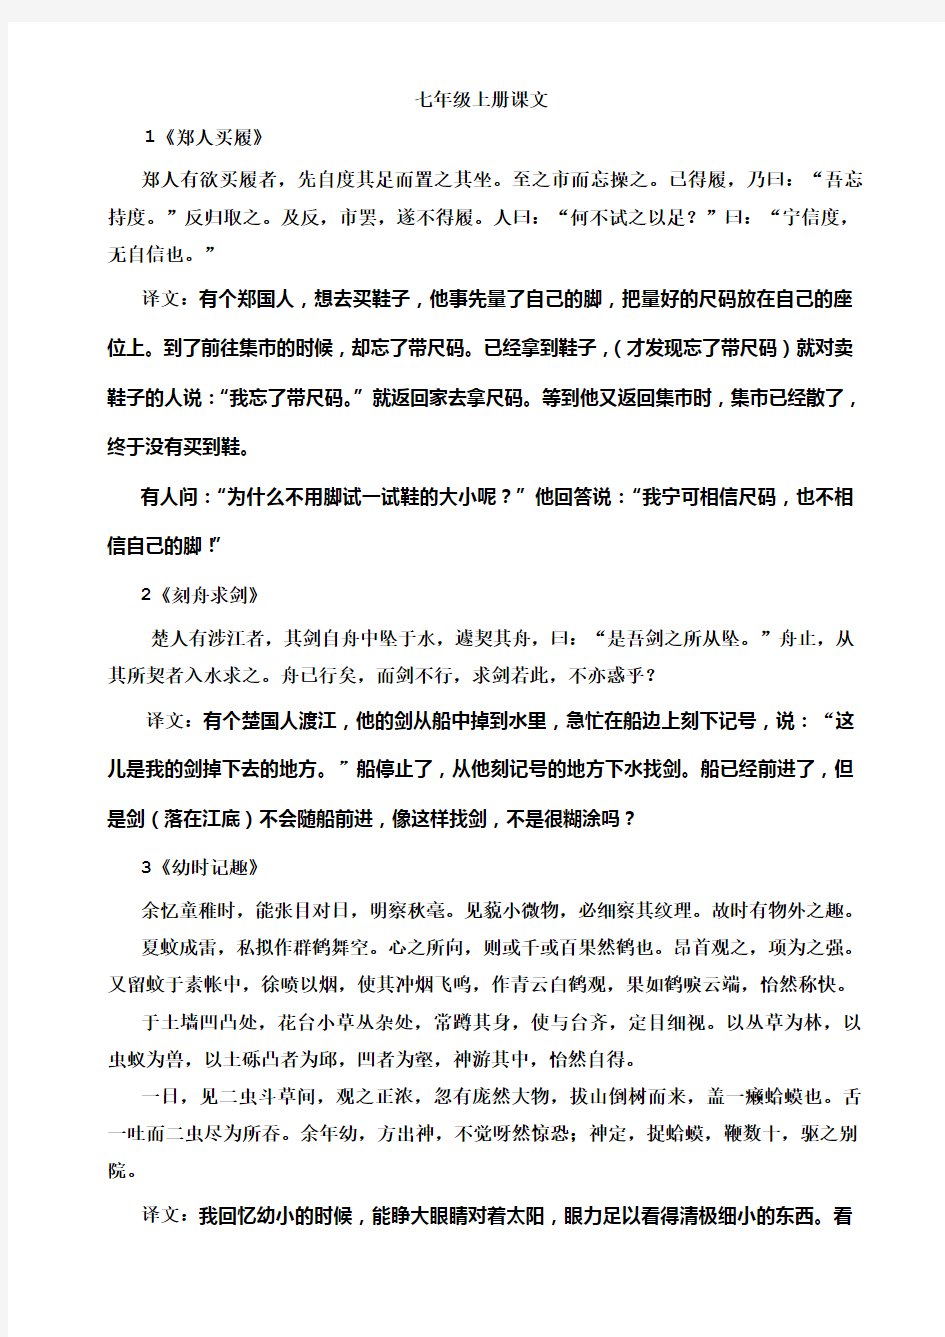 苏教版初中语文文言文原文及翻译(打印版,绝对完整,精心